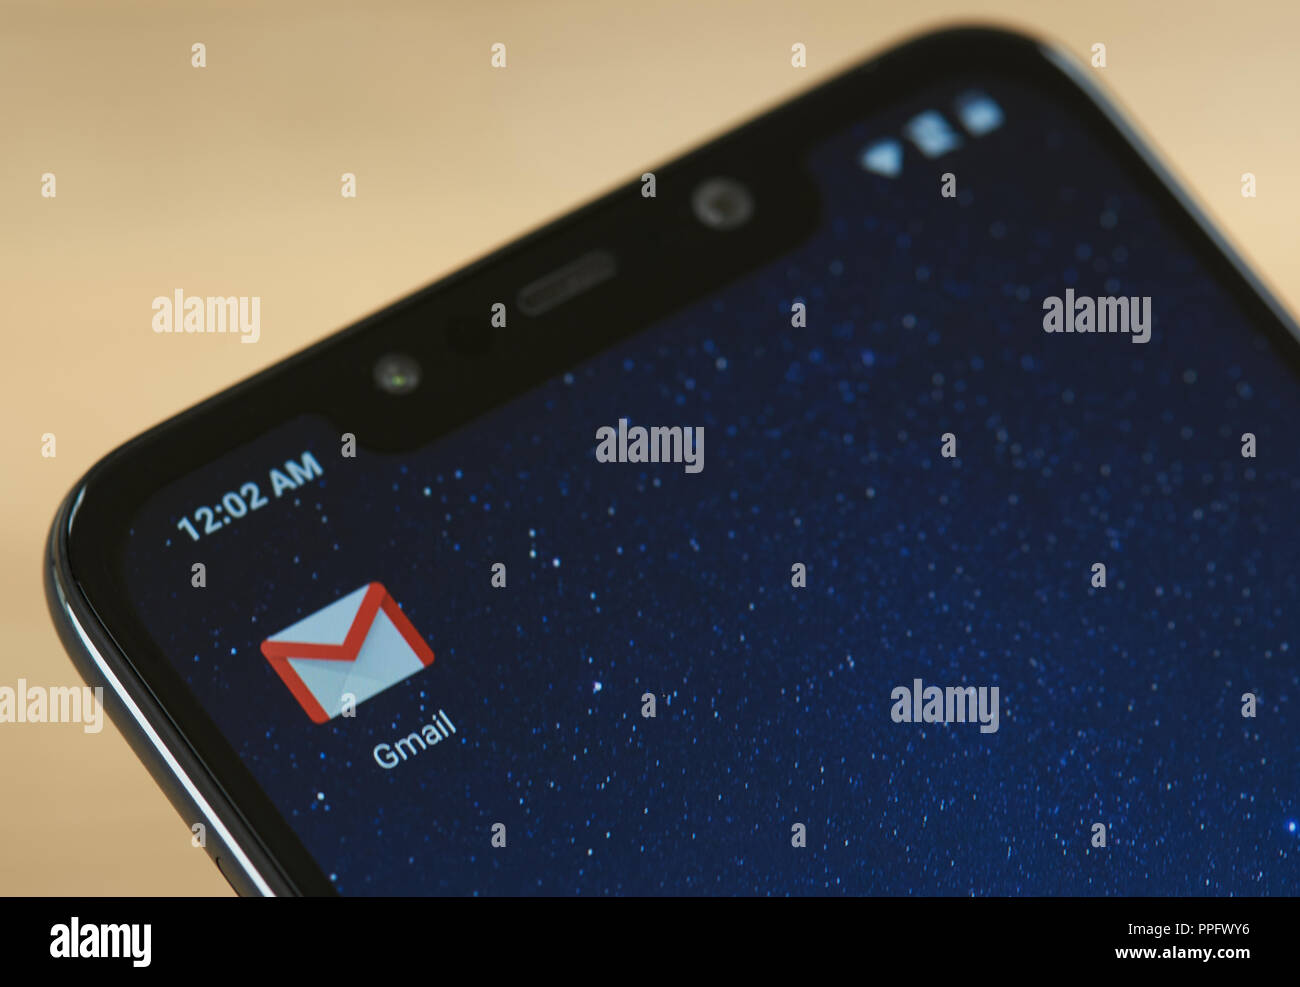 New York, USA - 24 septembre 2018 : logo e-mail Gmail sur l'écran du smartphone close up Banque D'Images